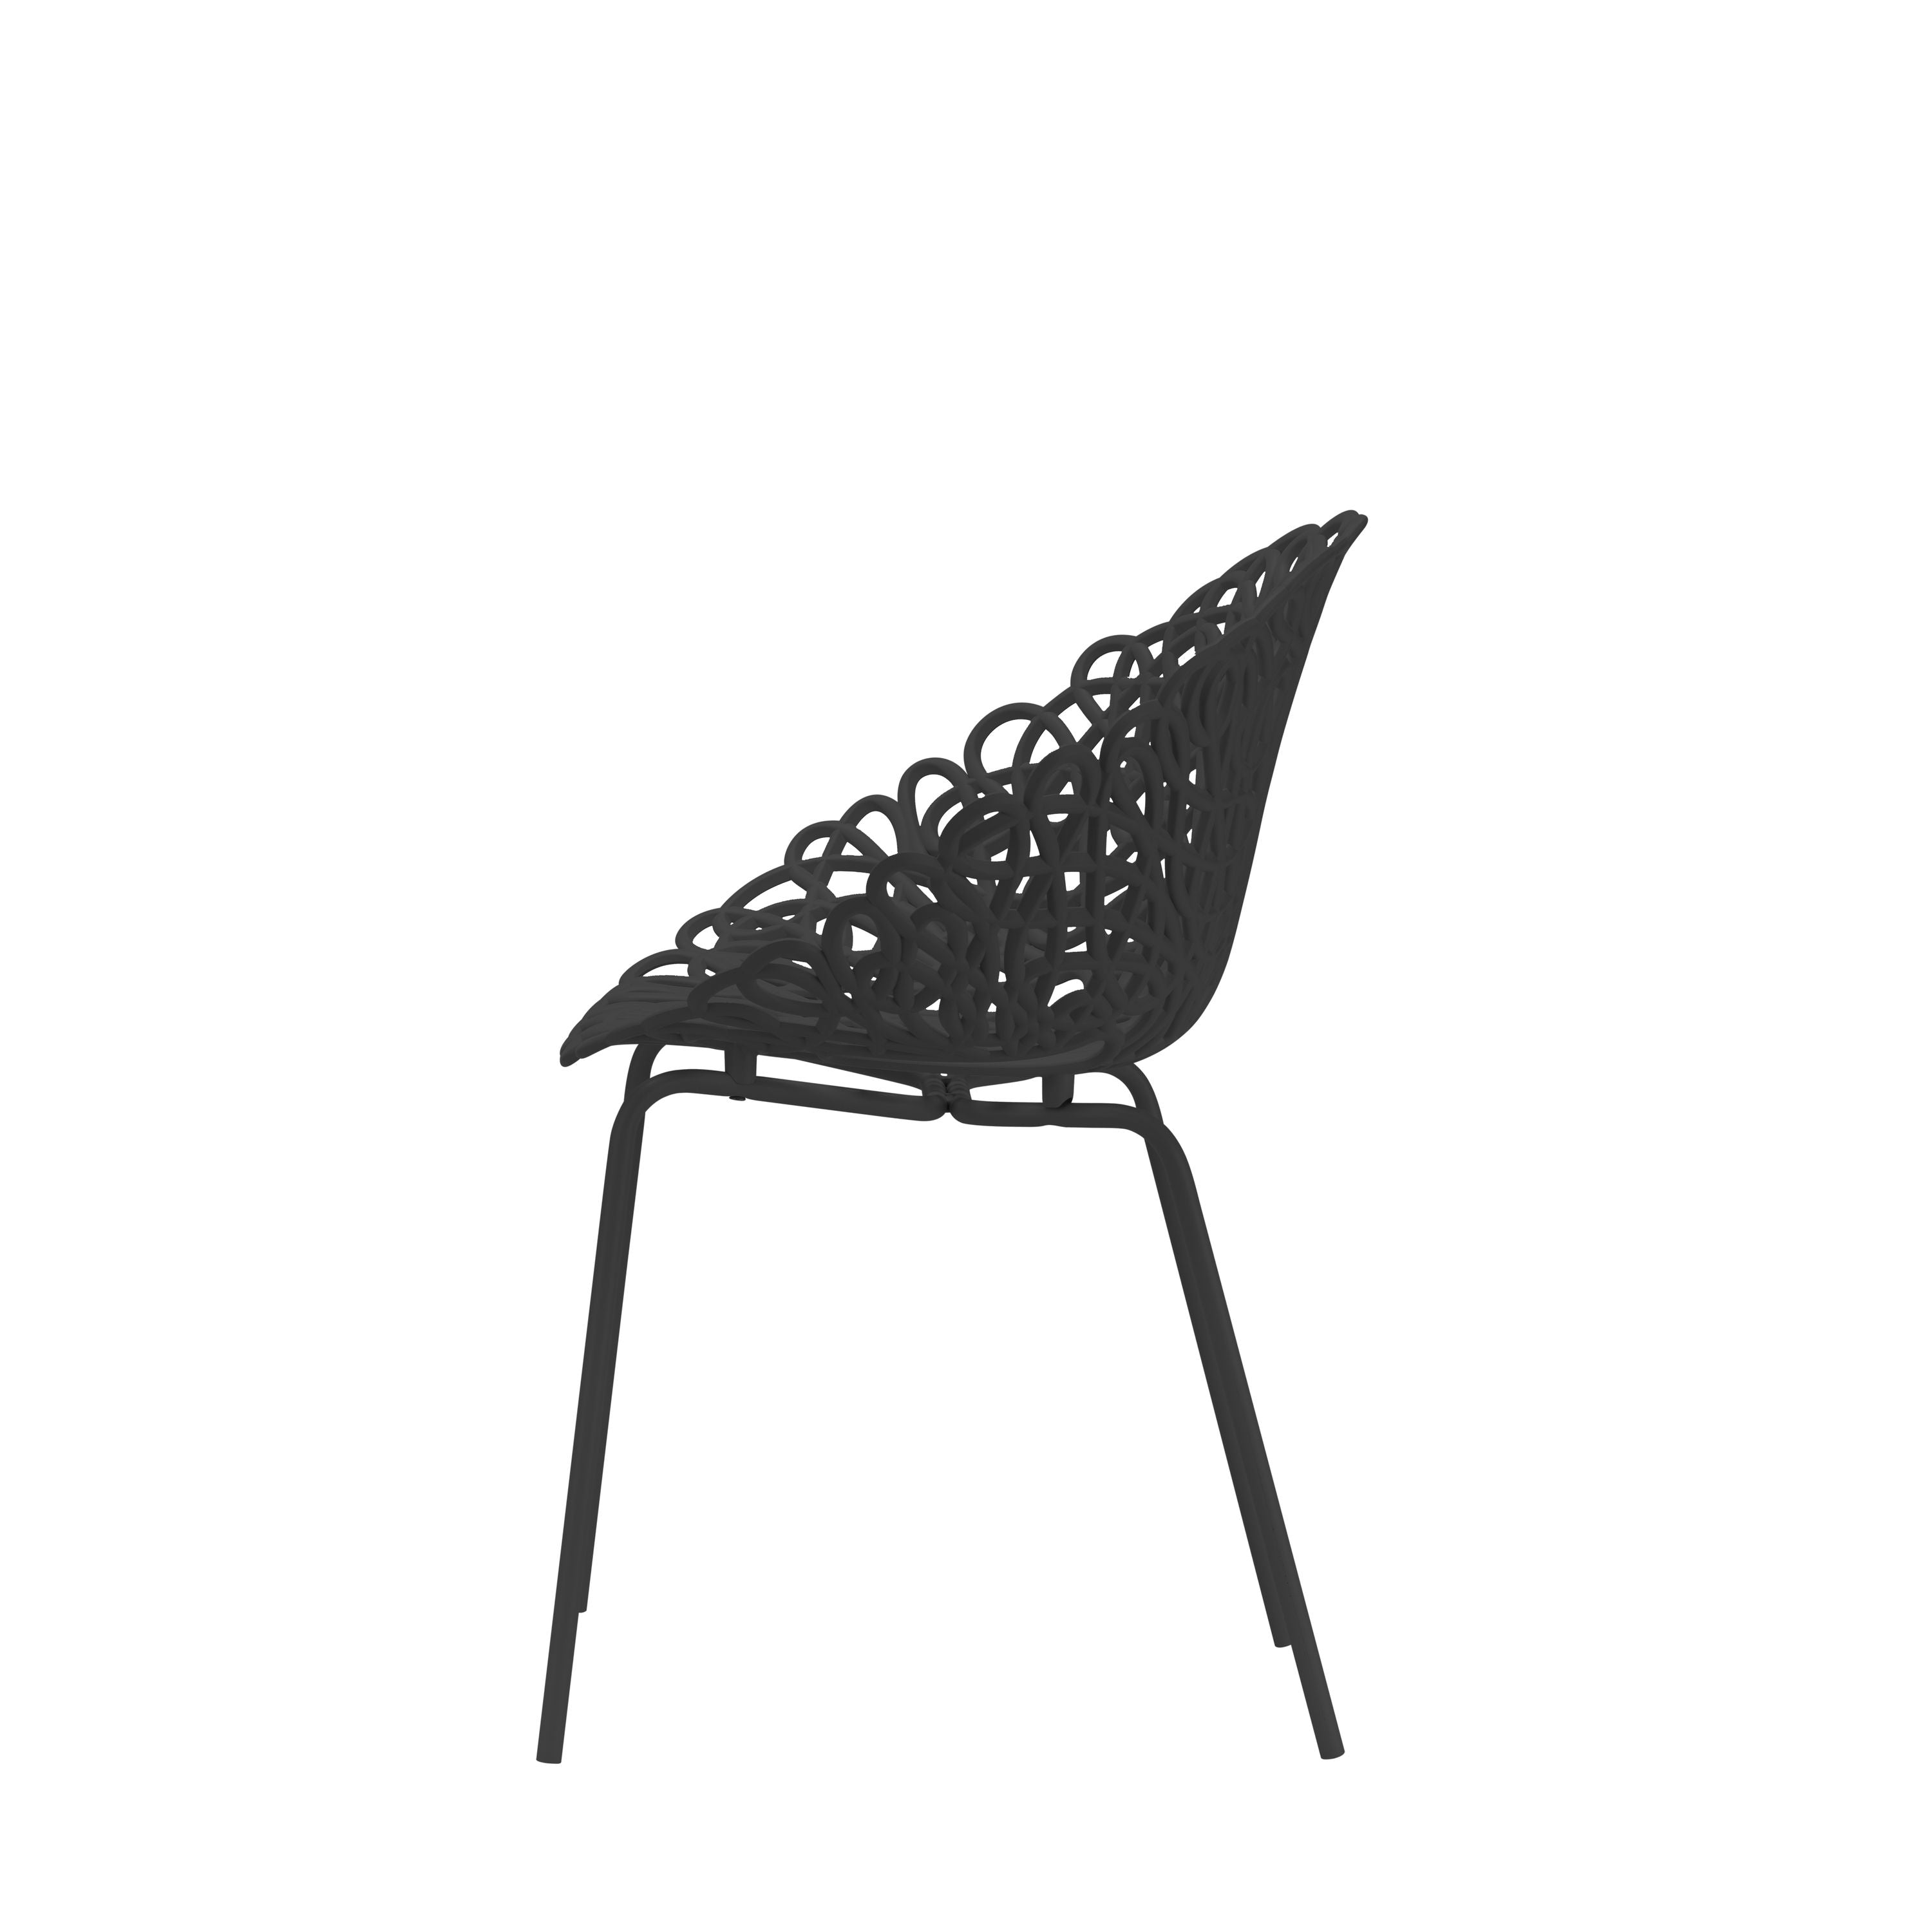 Qeeboo Bacana -stoel binnenset van 2 pc's, zwart